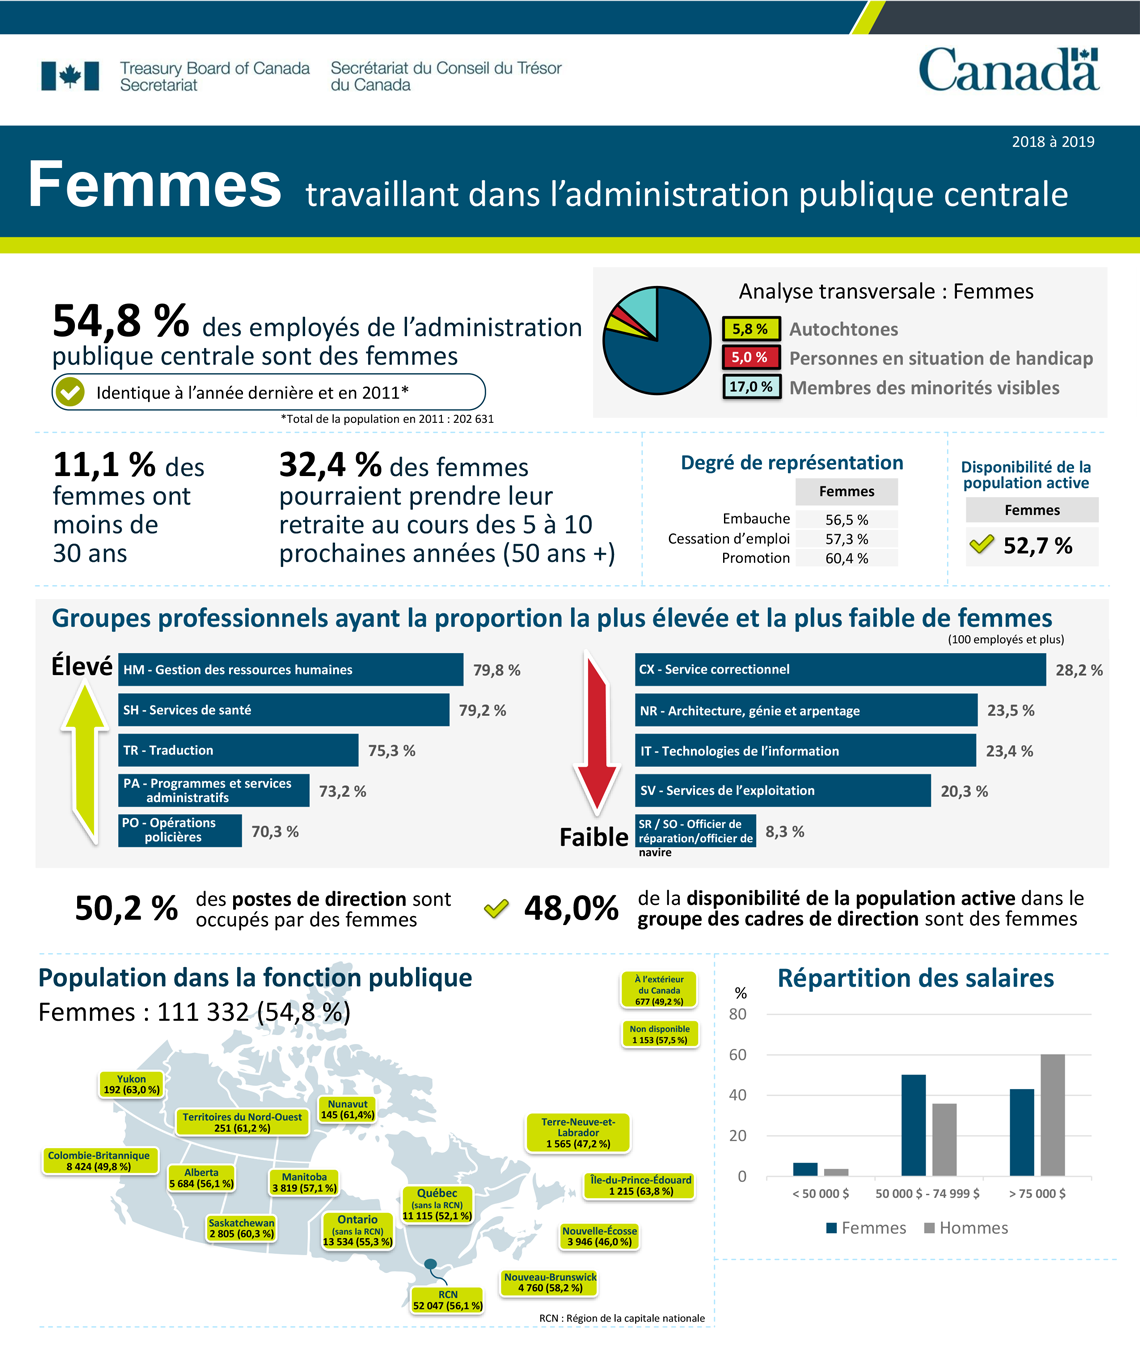 Femmes travaillant dans l’administration publique centrale (2018 à 2019)